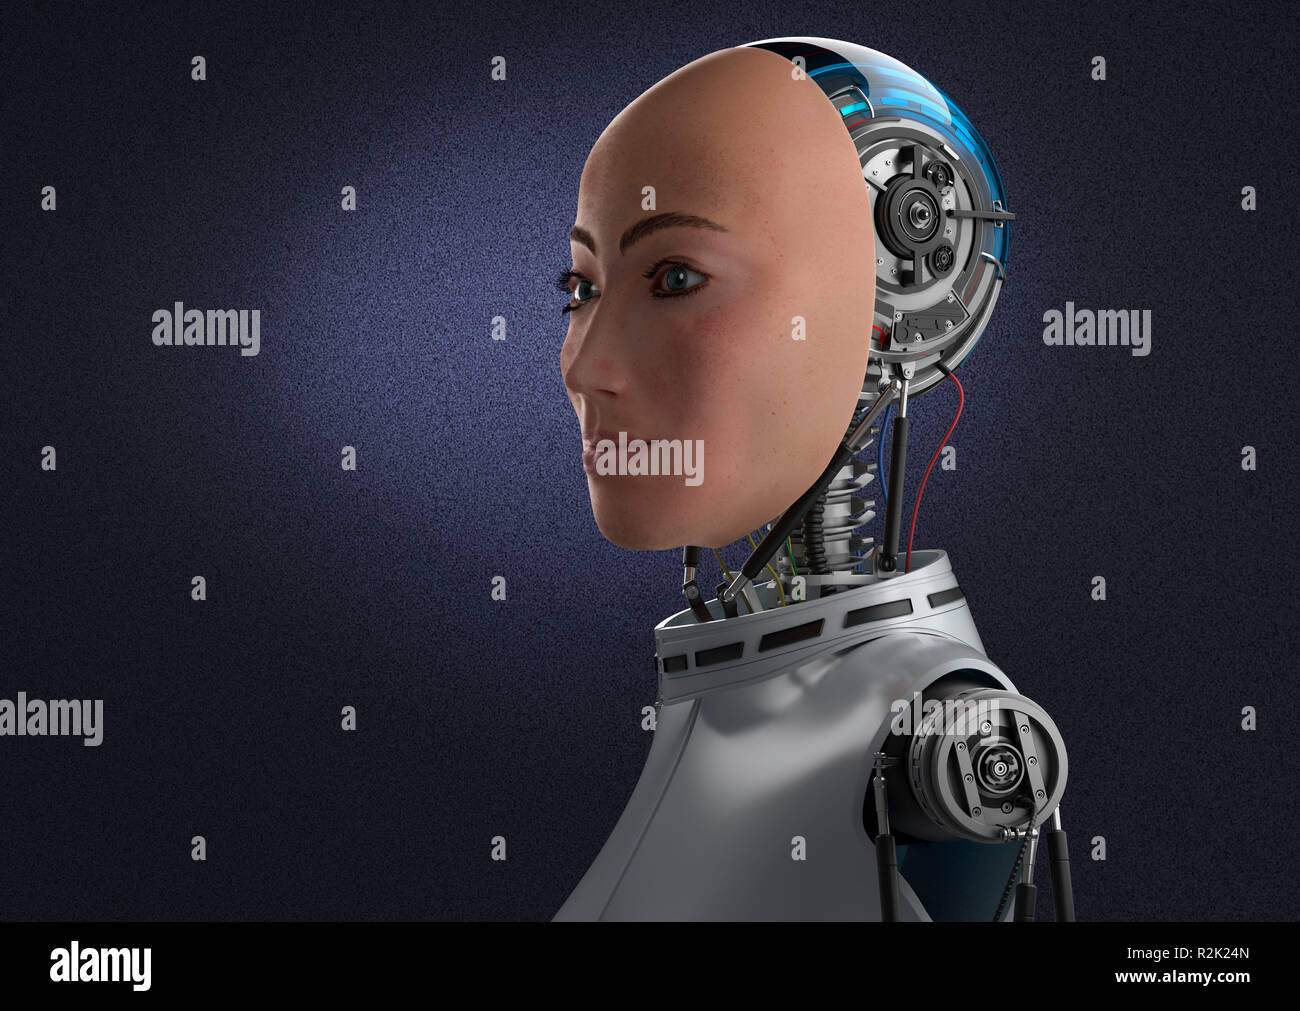 Android robot femelle avec visage réaliste, mécanique à l'arrière de la tête et le haut du corps. Demi-close-up side view, contre fond violet foncé. Banque D'Images